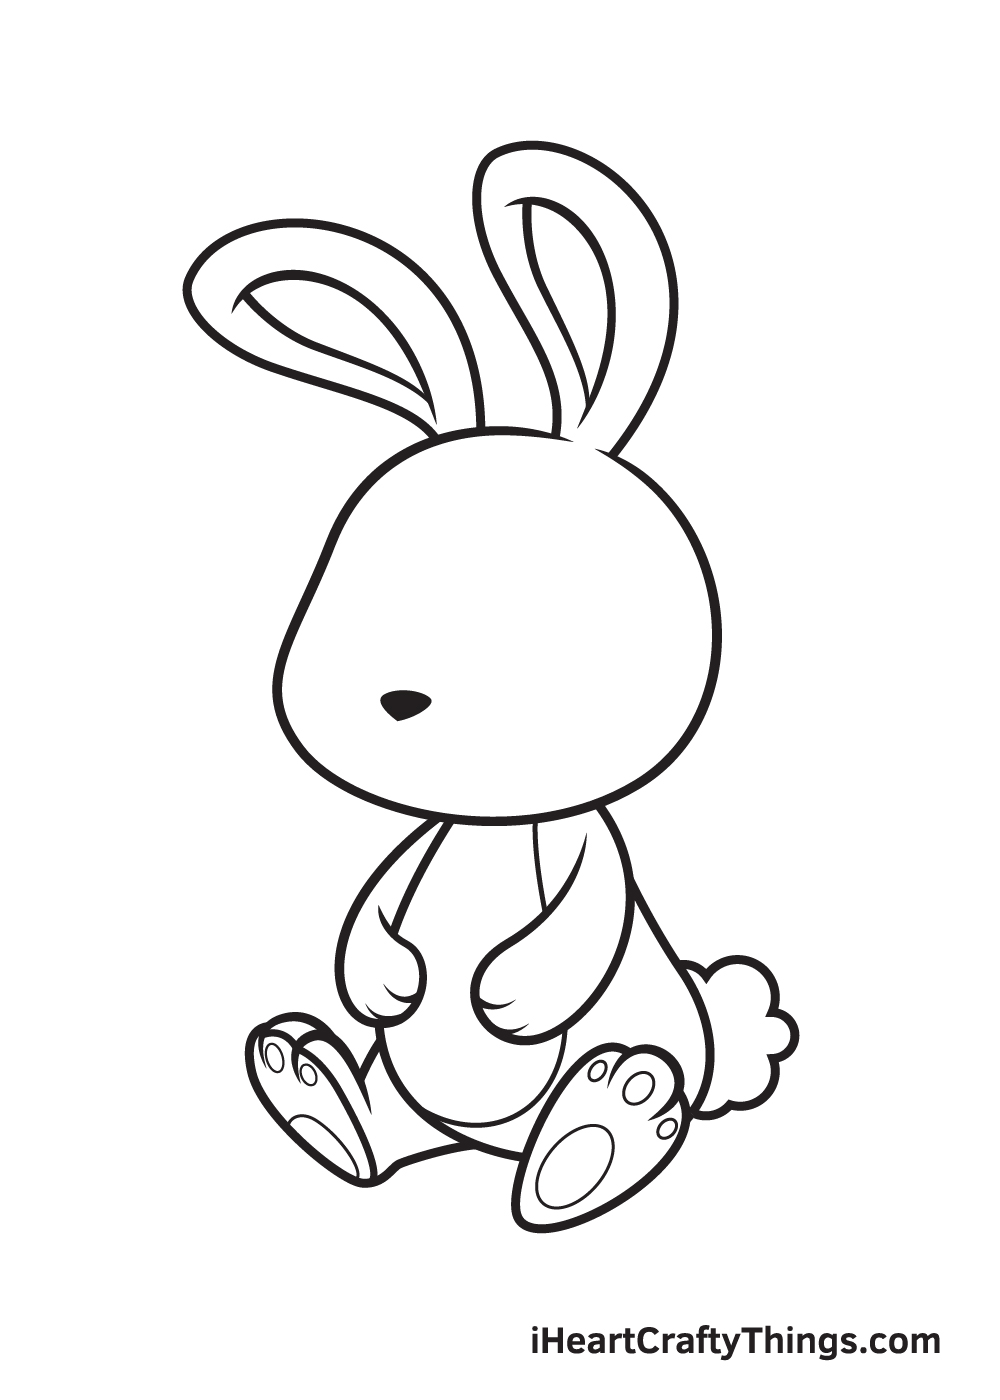 Vẽ chú thỏ - Bước 7